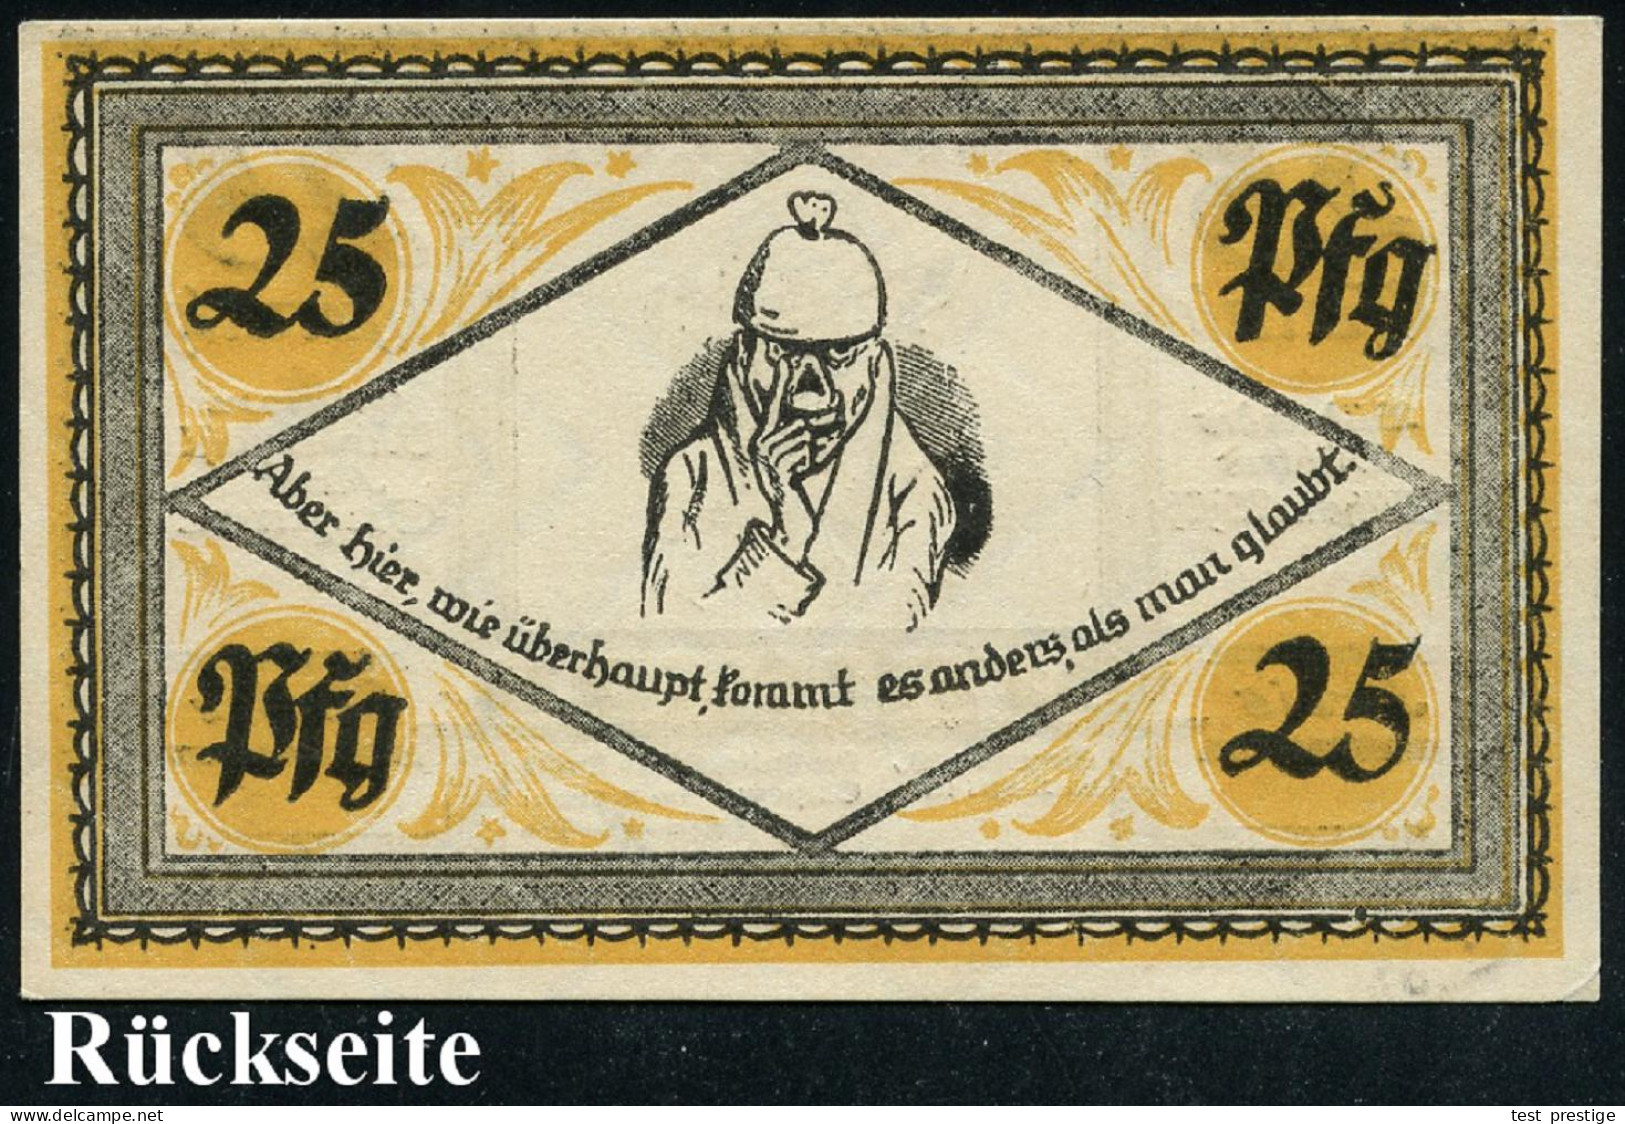 Stolzenau 1921 (Apr.) Infla-Notgeldschein 25 Pf. Mit Portrait Von Wilh. Busch (Selbstportrait Etc.) Bankfrisch - DEUTSCH - Writers